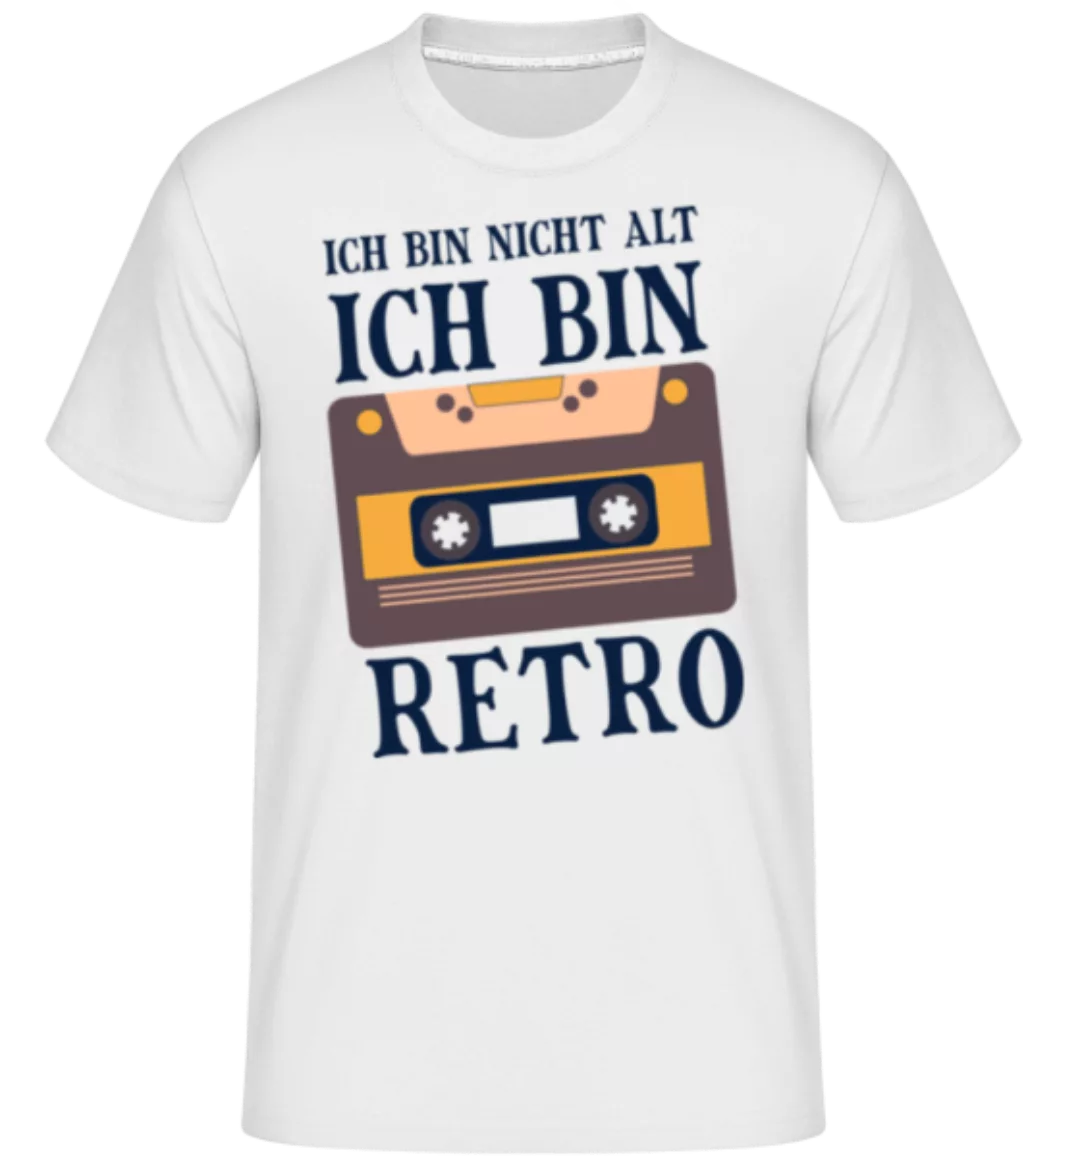 Ich Bin Retro · Shirtinator Männer T-Shirt günstig online kaufen